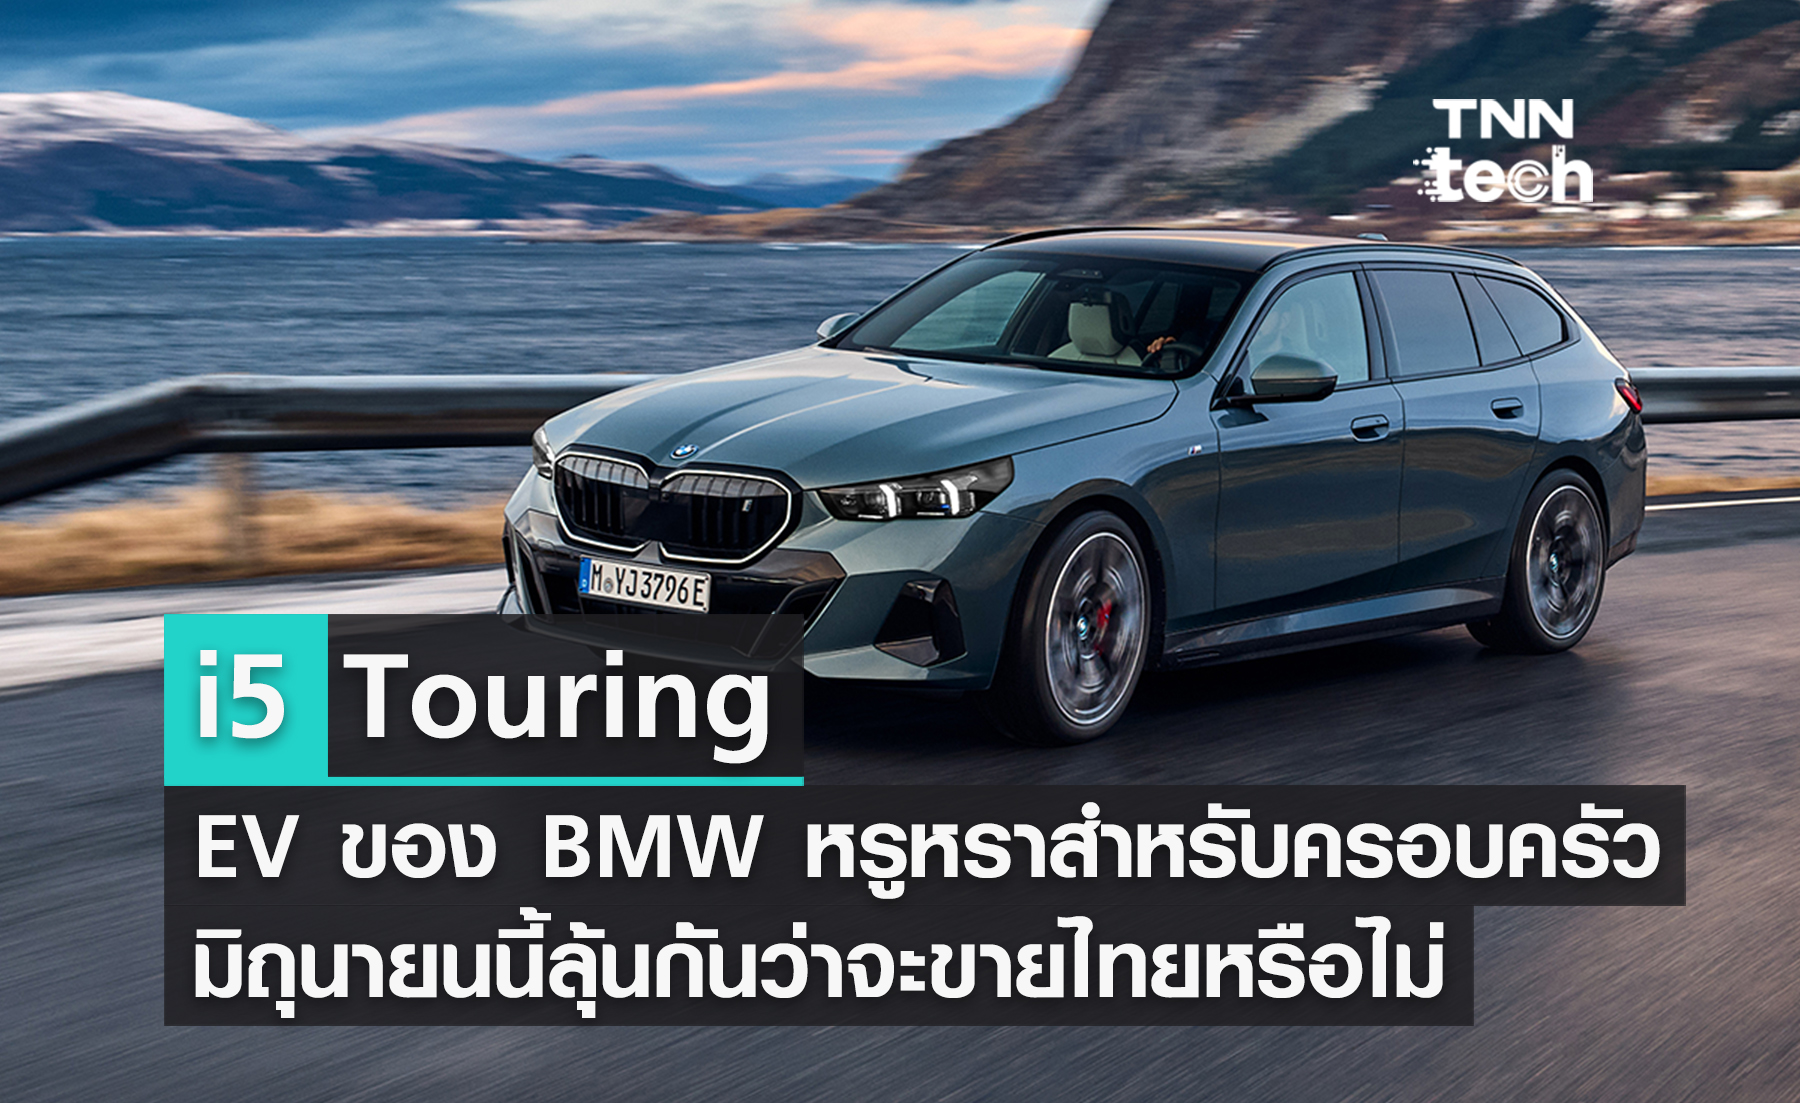 เปิดตัว BMW i5 Touring รถ EV หรูหราสไตล์ Wagon สำหรับสายครอบครัว ขายมิถุนายนนี้ แล้วประเทศไทยจะมีด้วยหรือไม่ ?